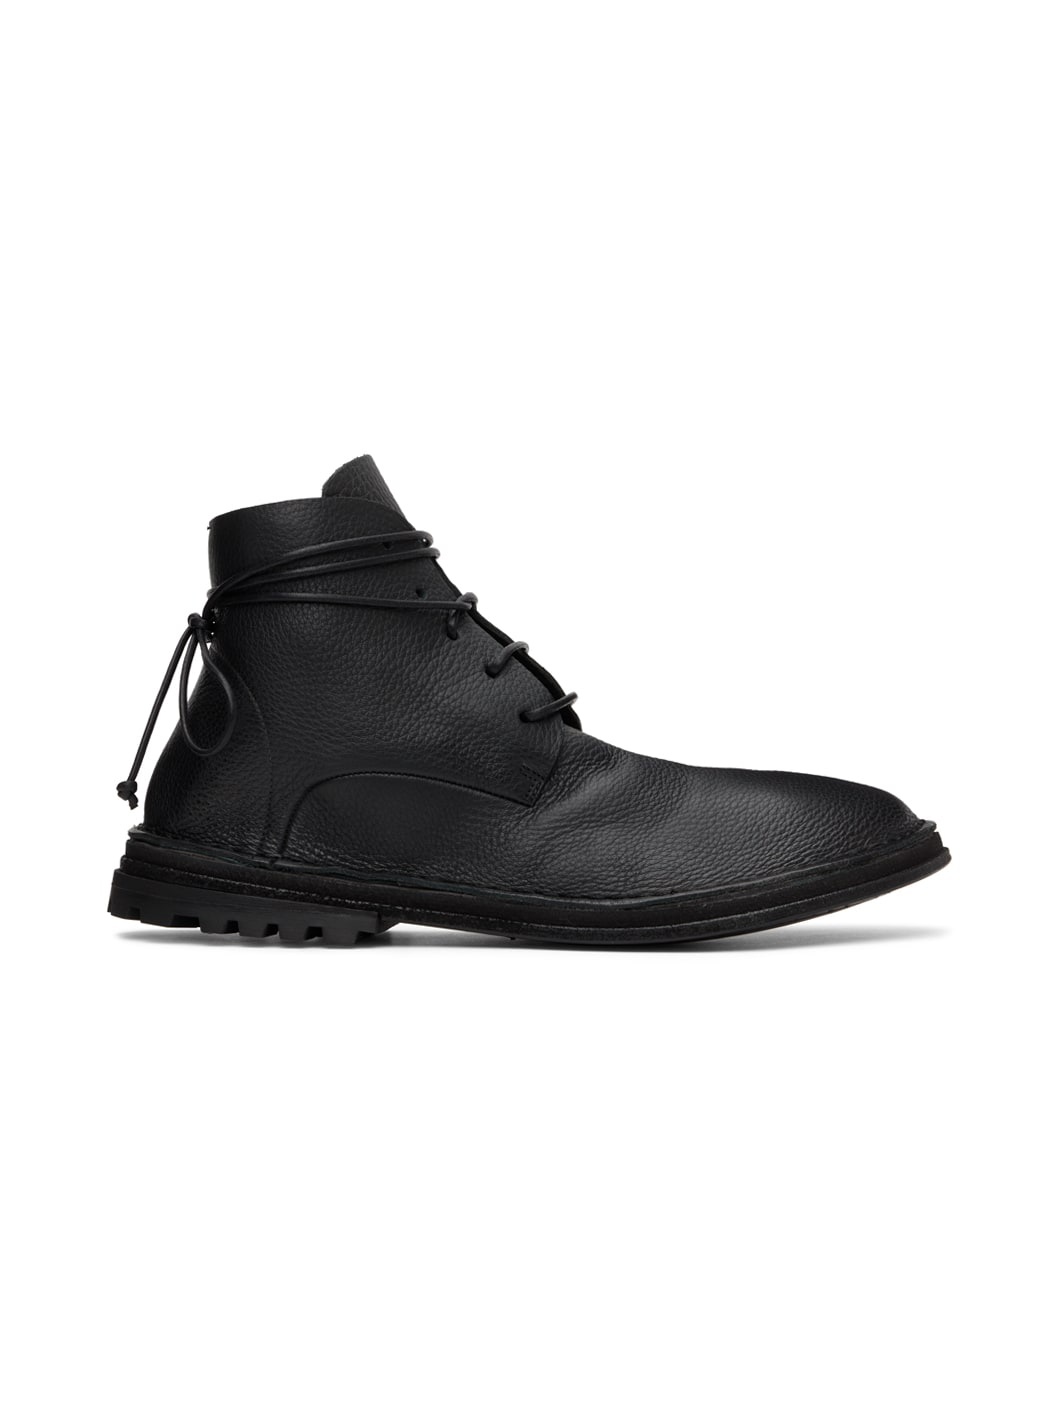 Black Fungaccio Boots - 1